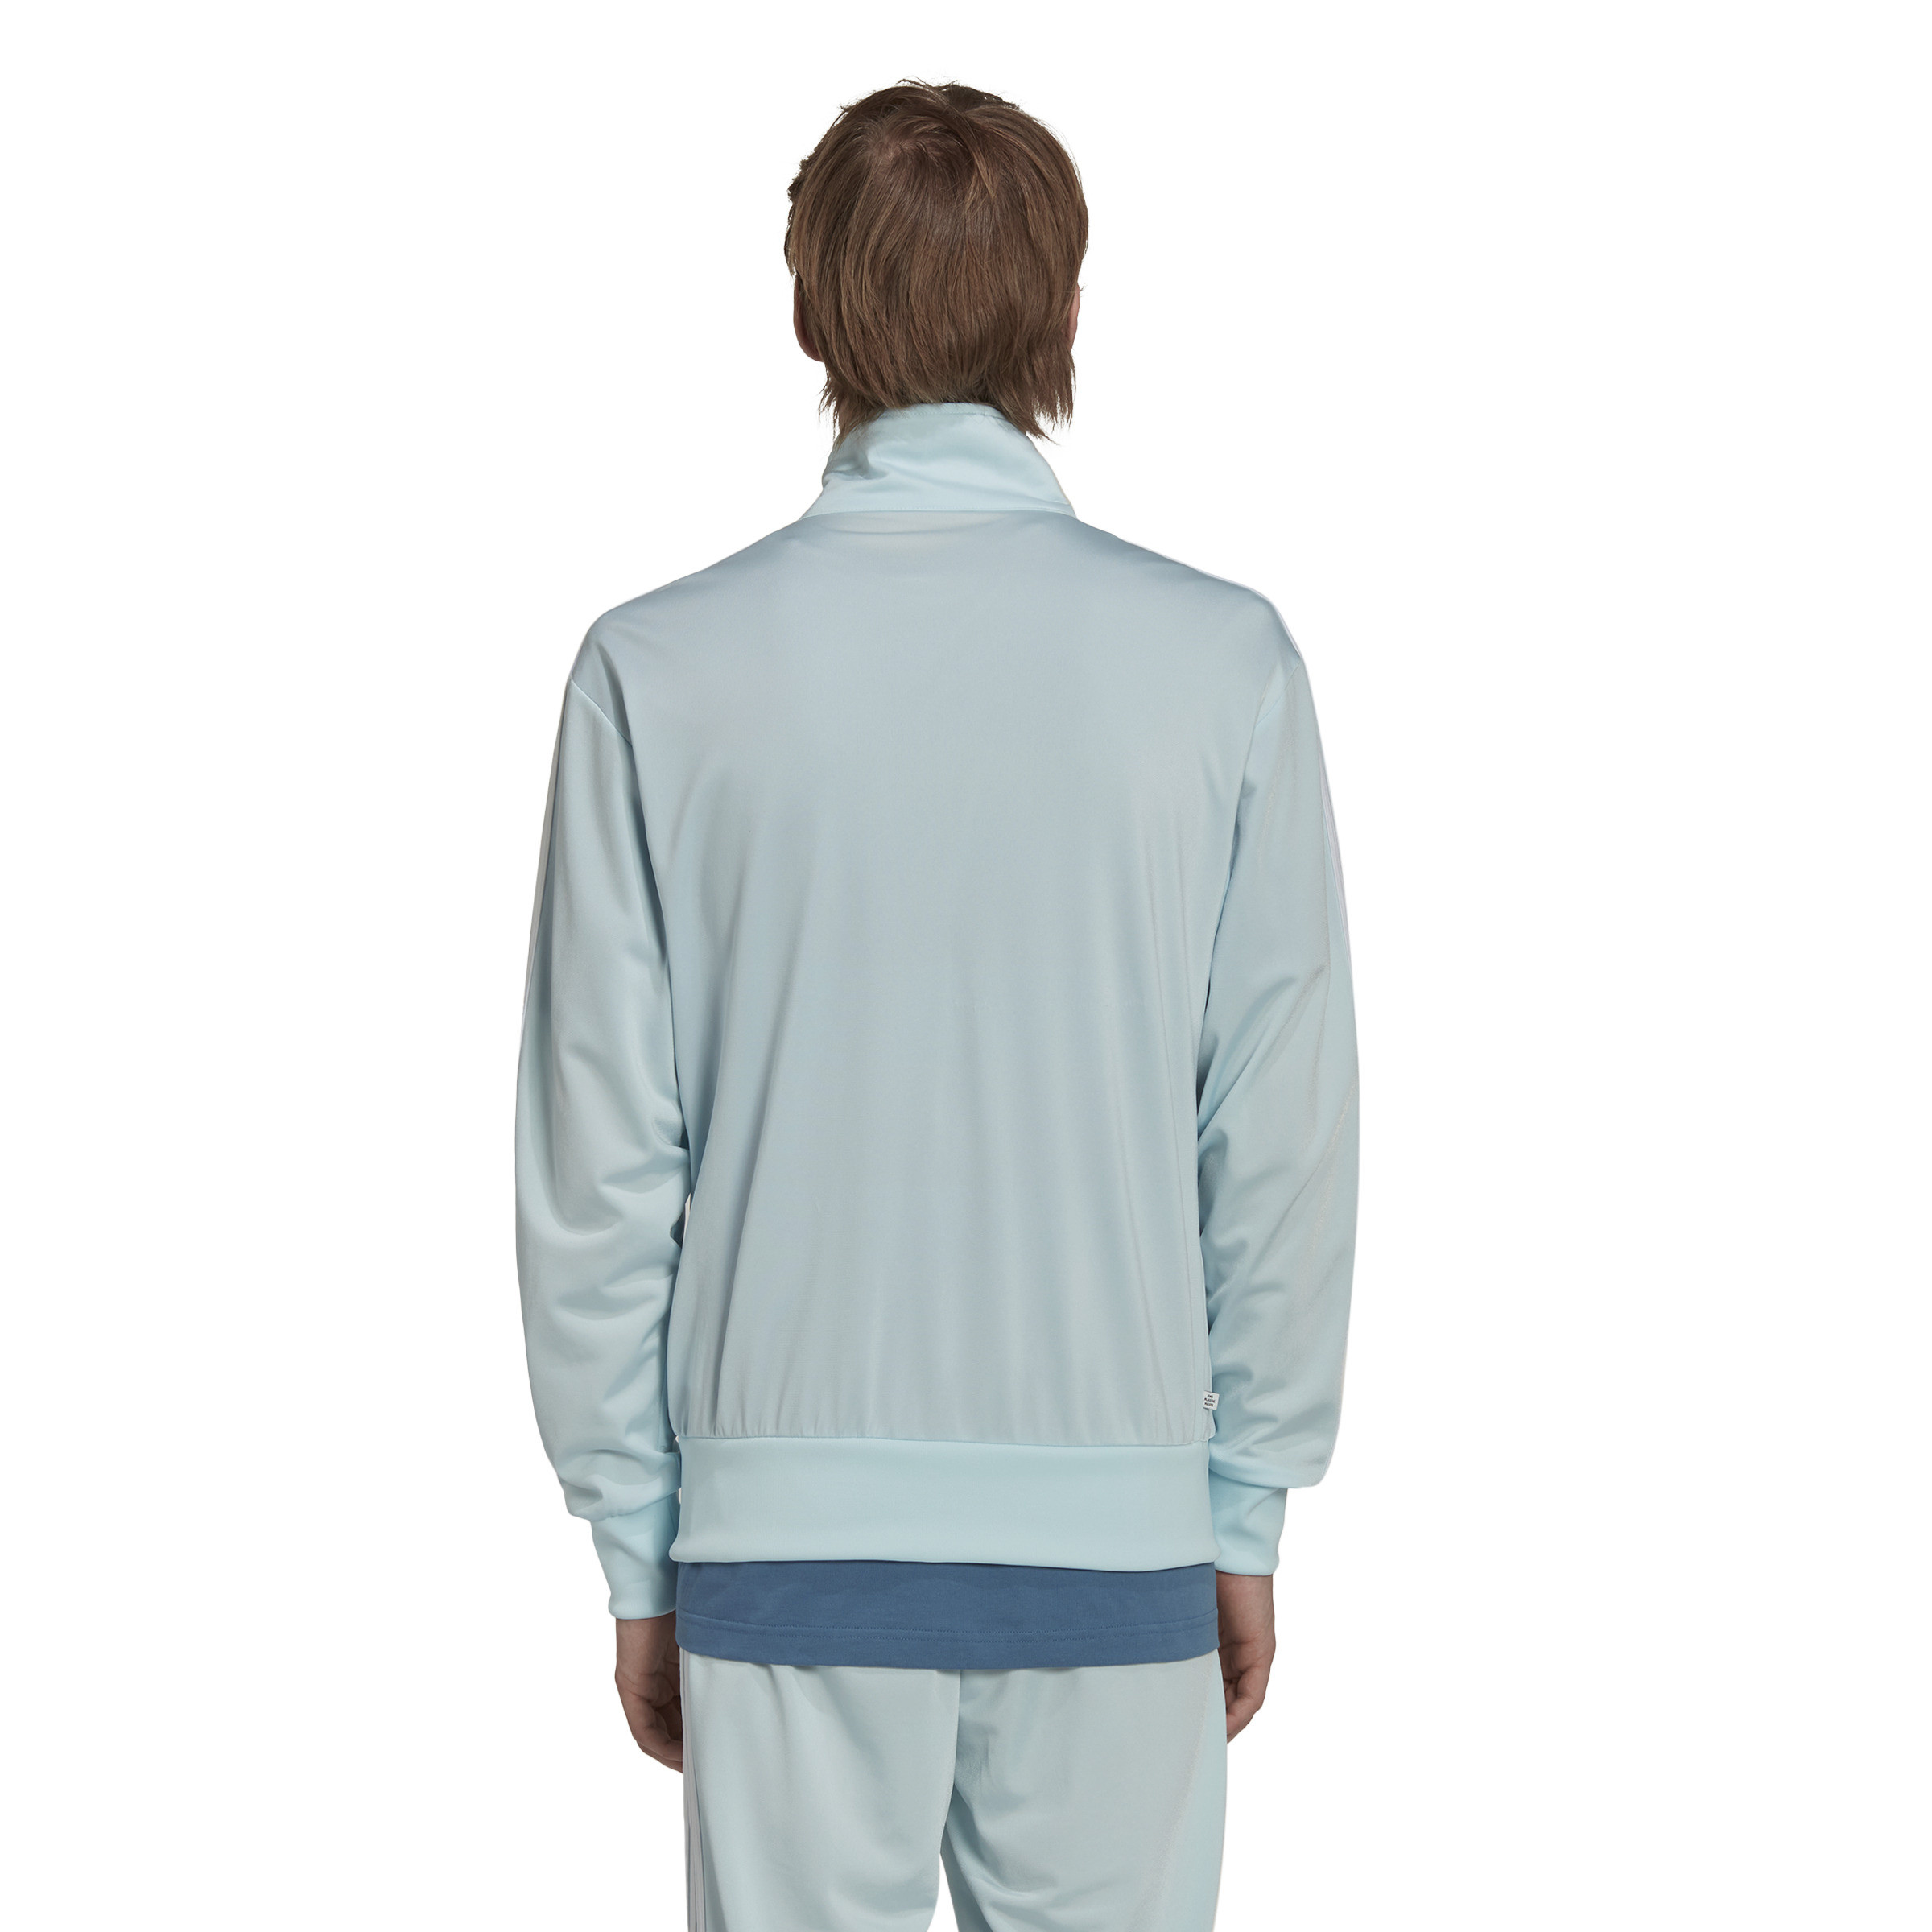 Adidas - Sweatshirt with logo, Light Blue, large image number 2